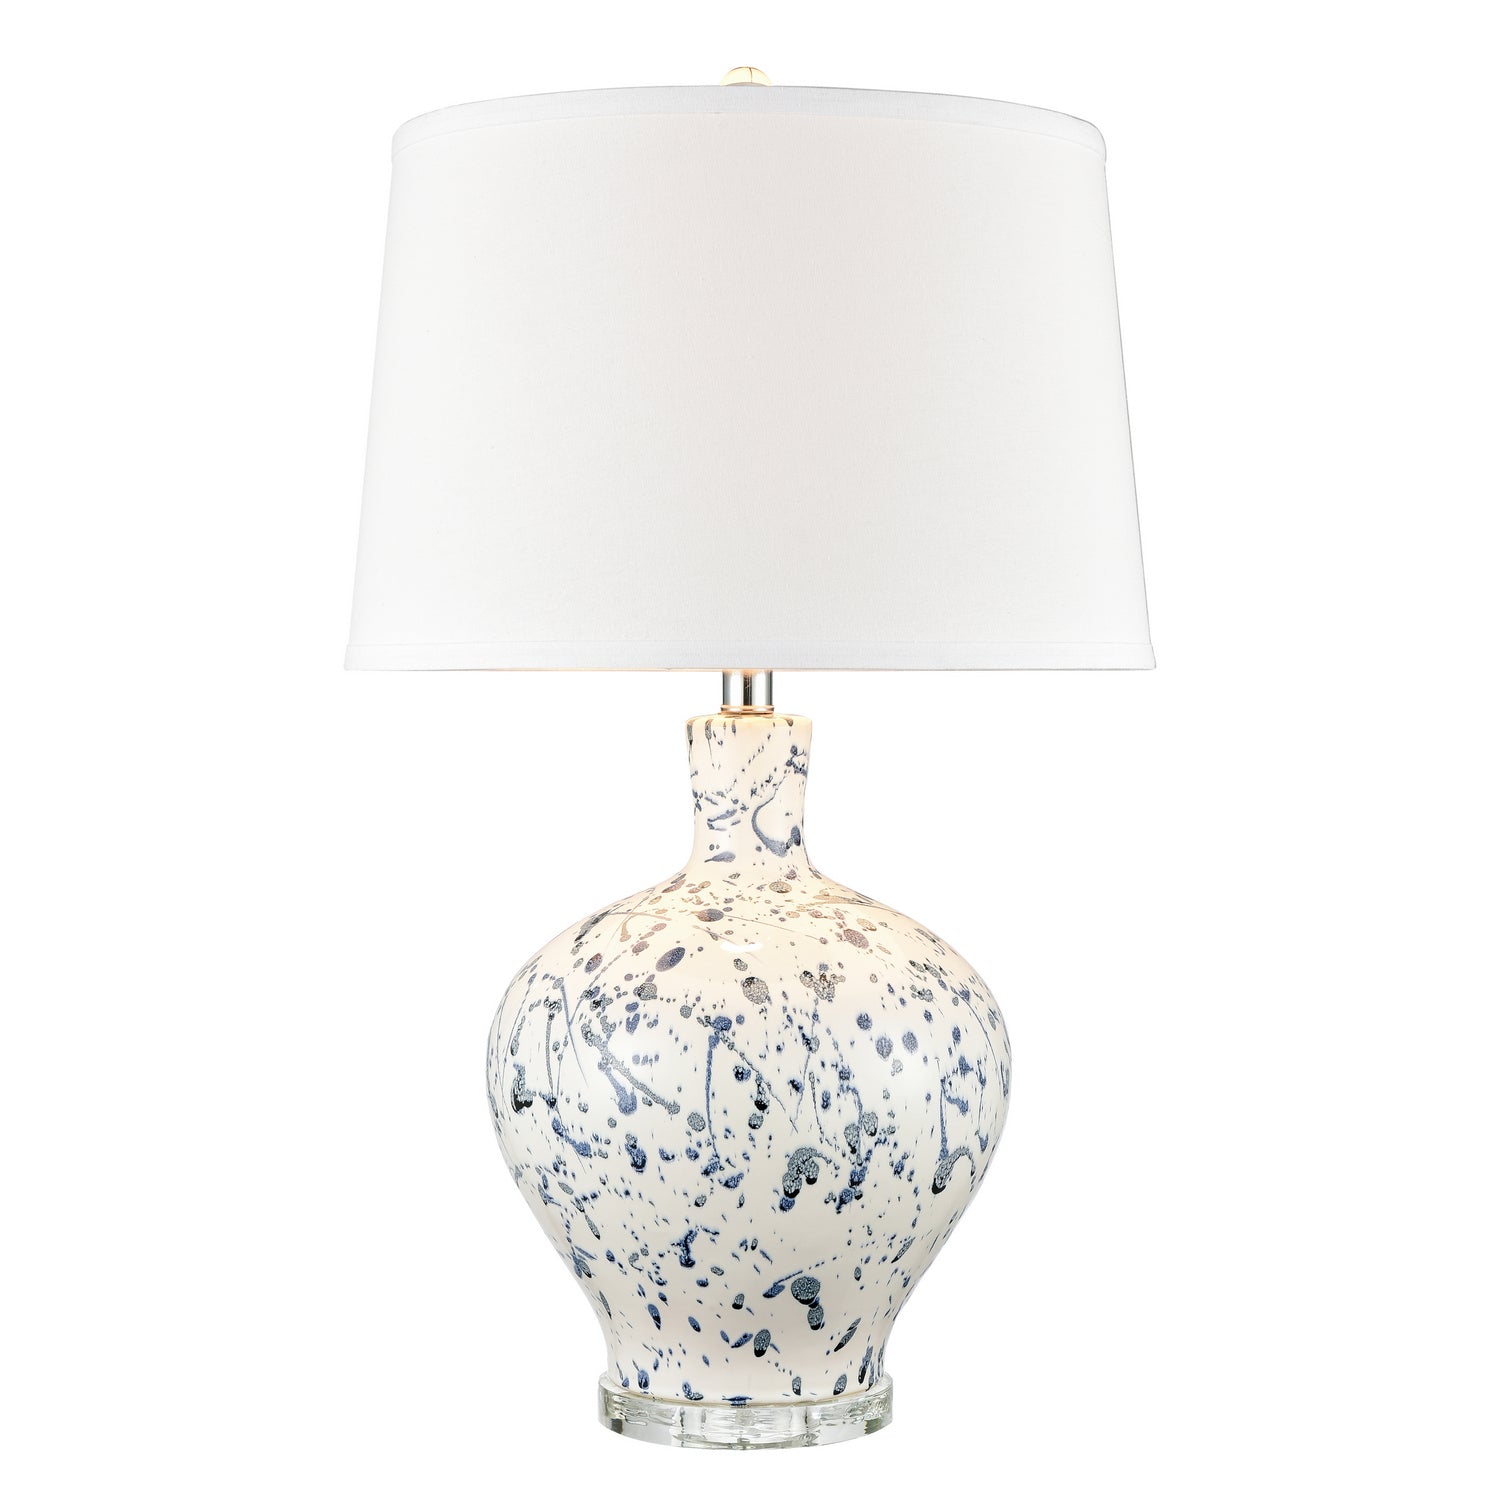 ELK Home - H0019-8030 - One Light Table Lamp - Rueben Crescent - White